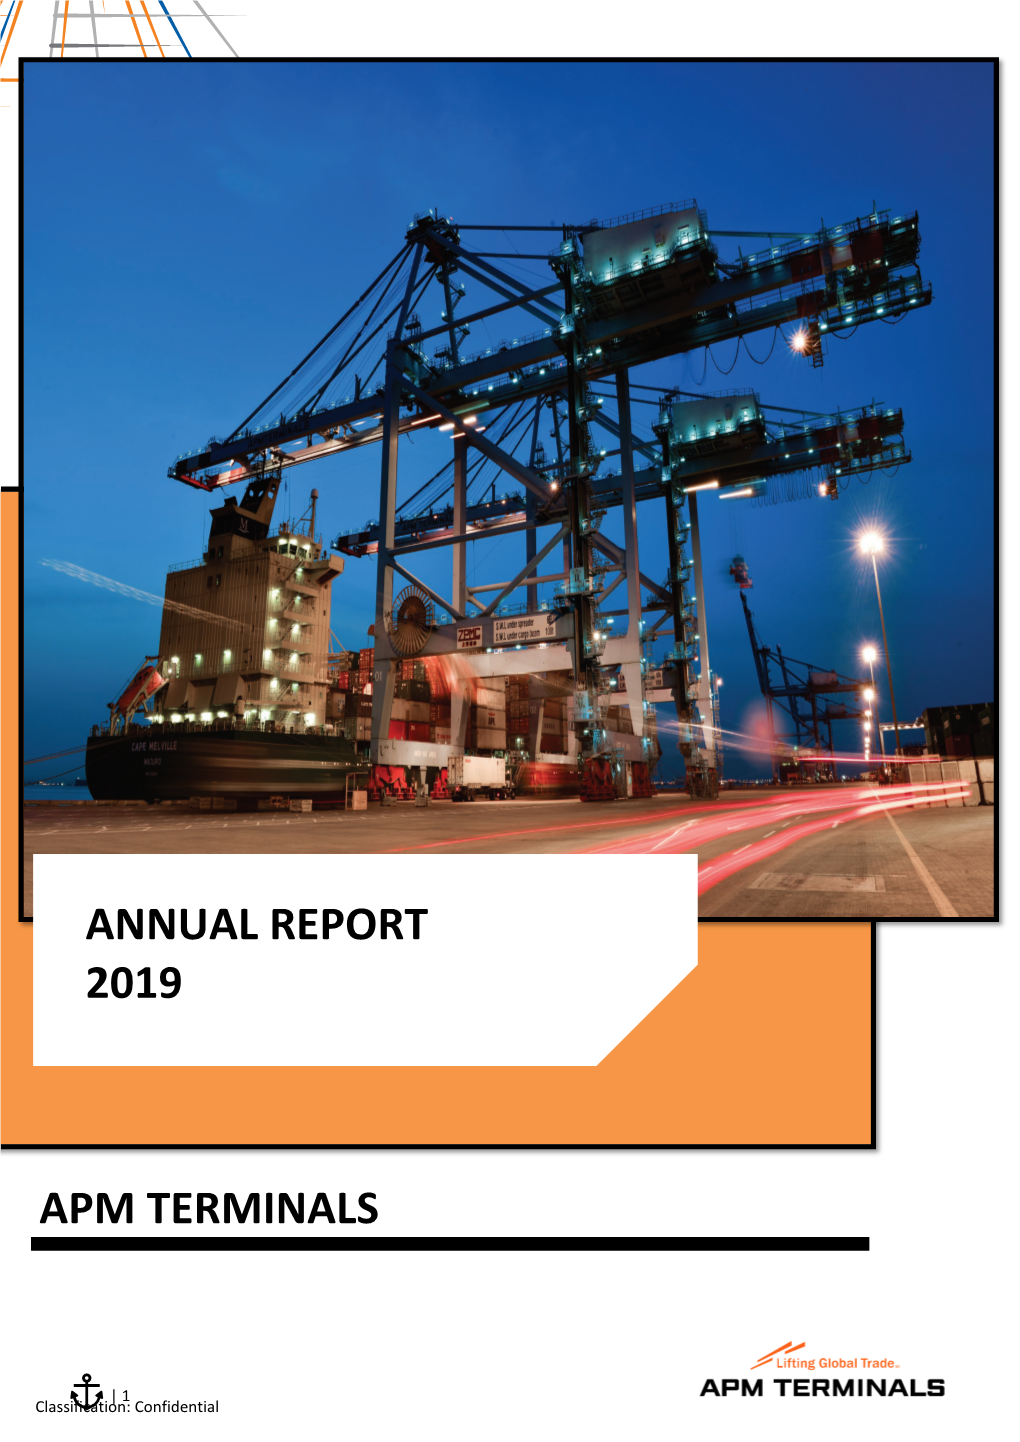 Annual Report 2019 Apm Terminals